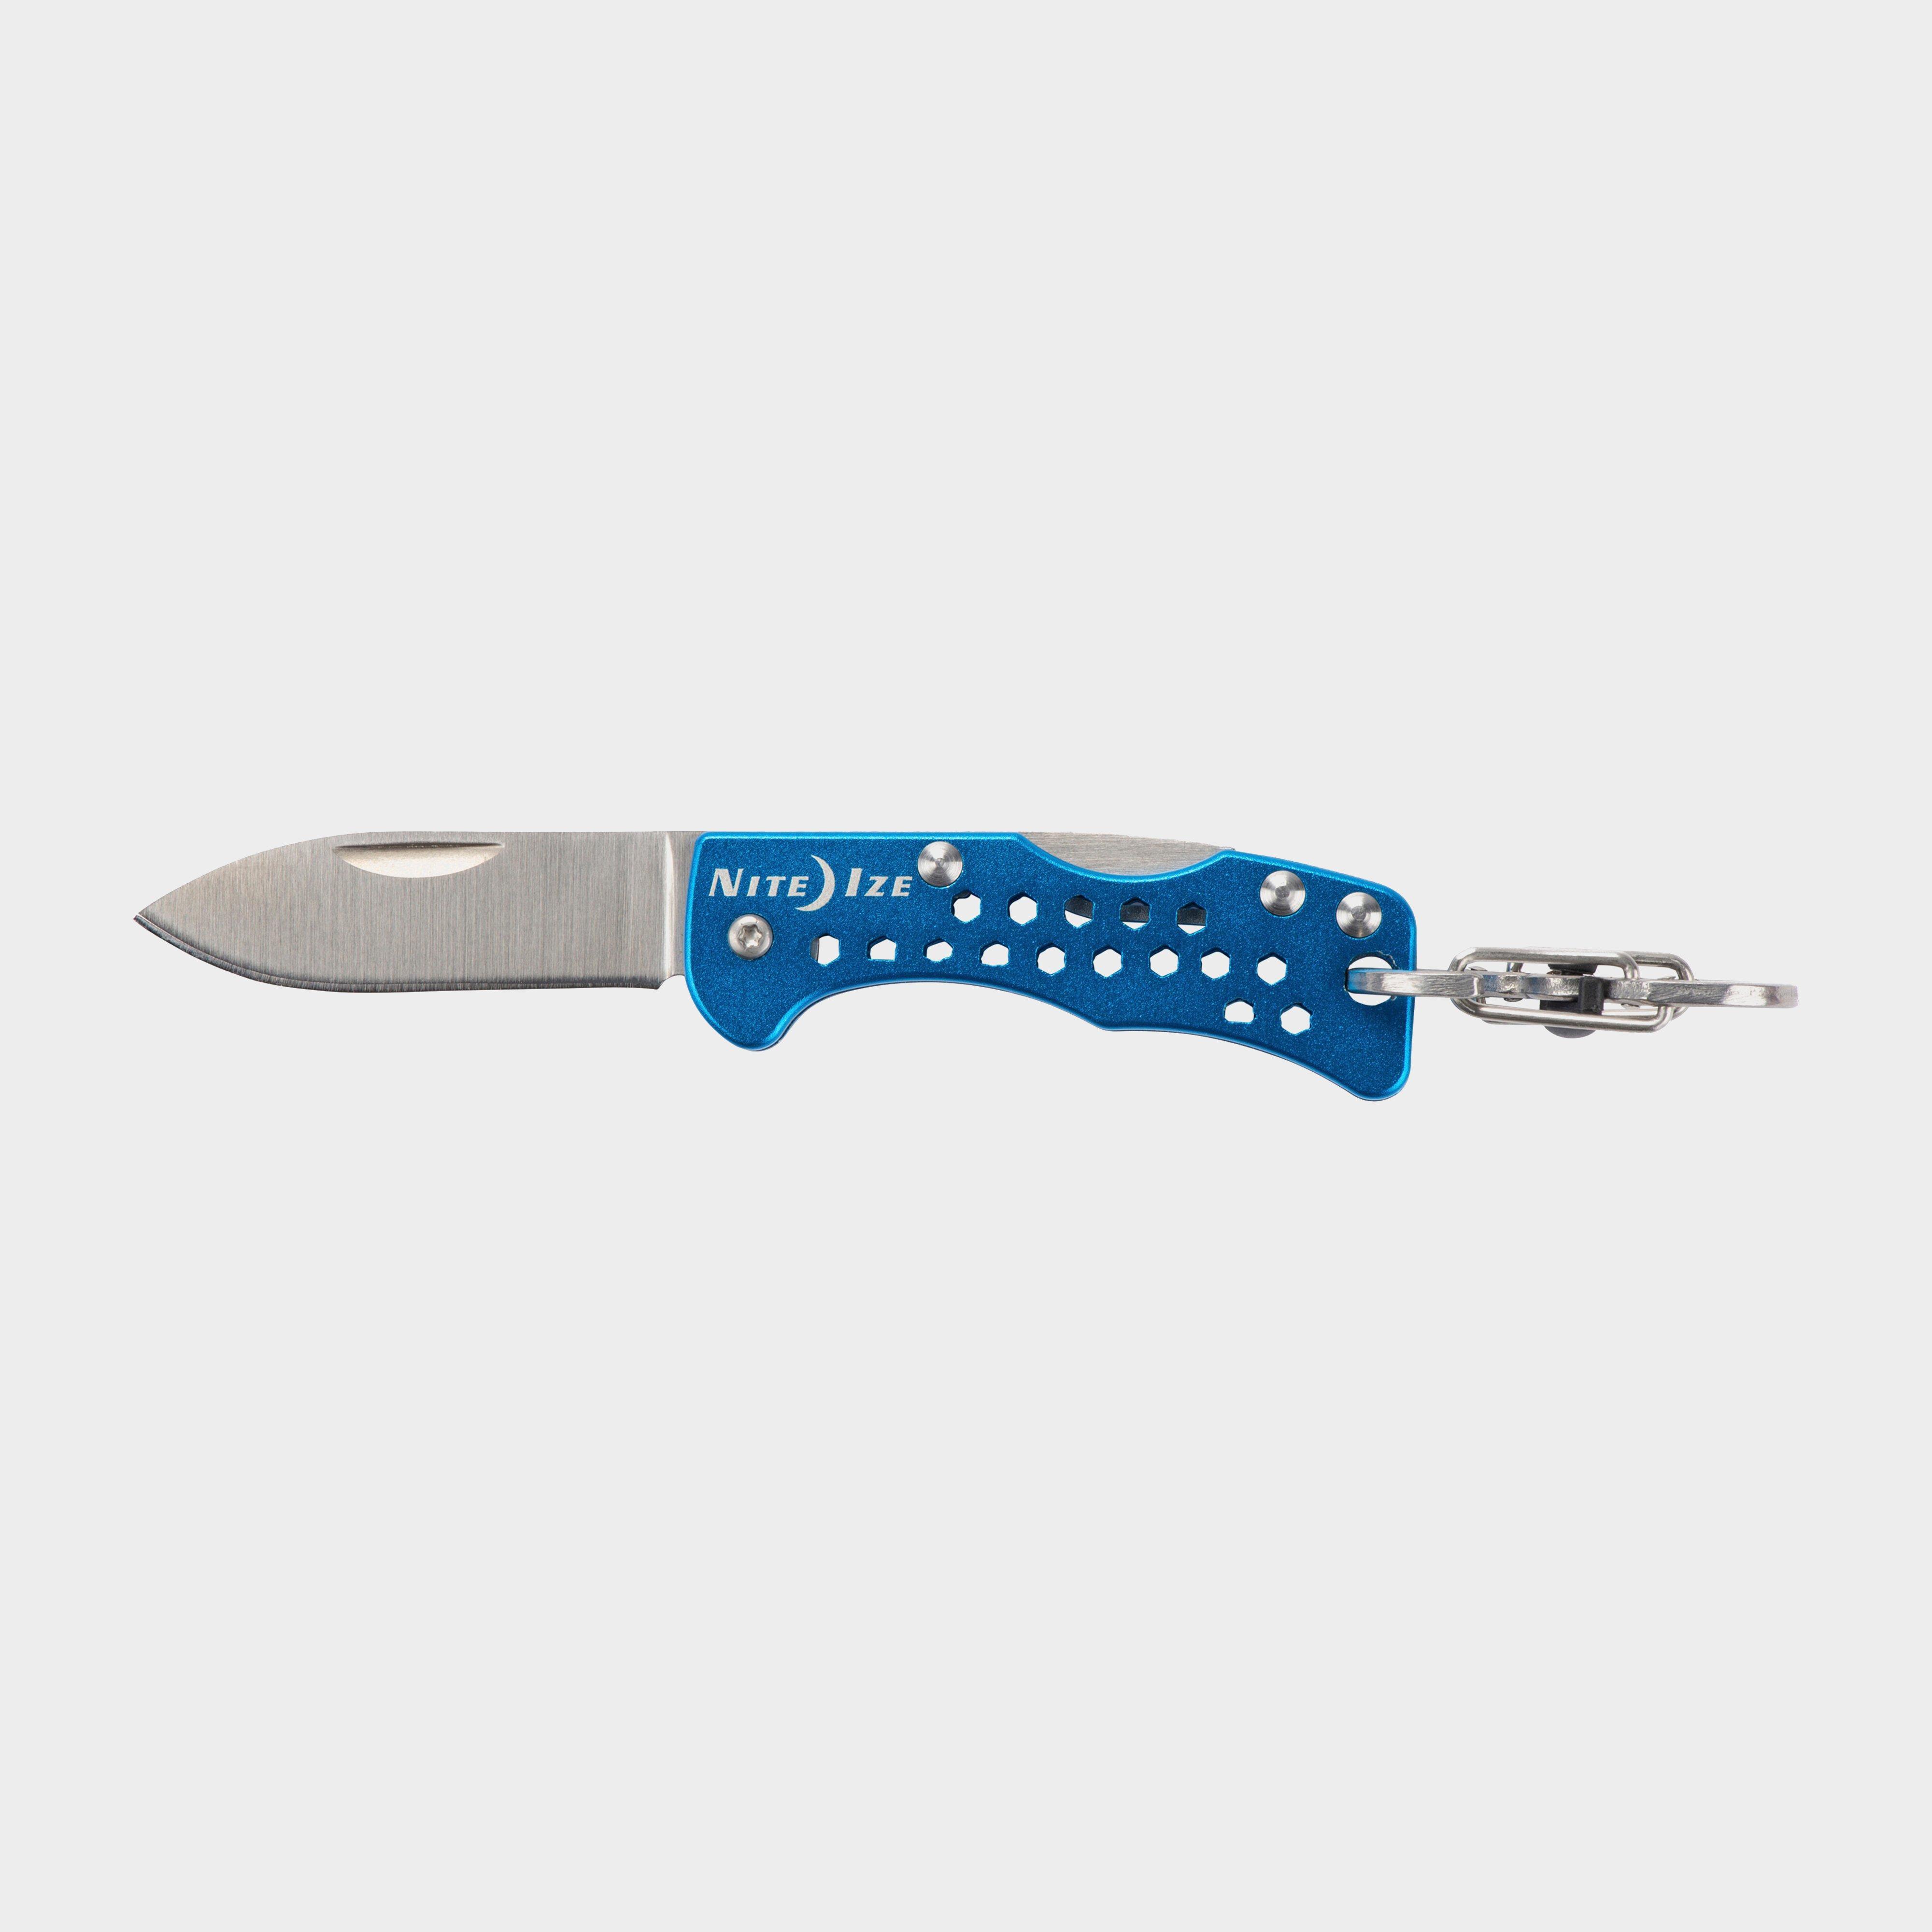 Niteize Doohickey Key Chain Knife - Blue/knife  Blue/knife